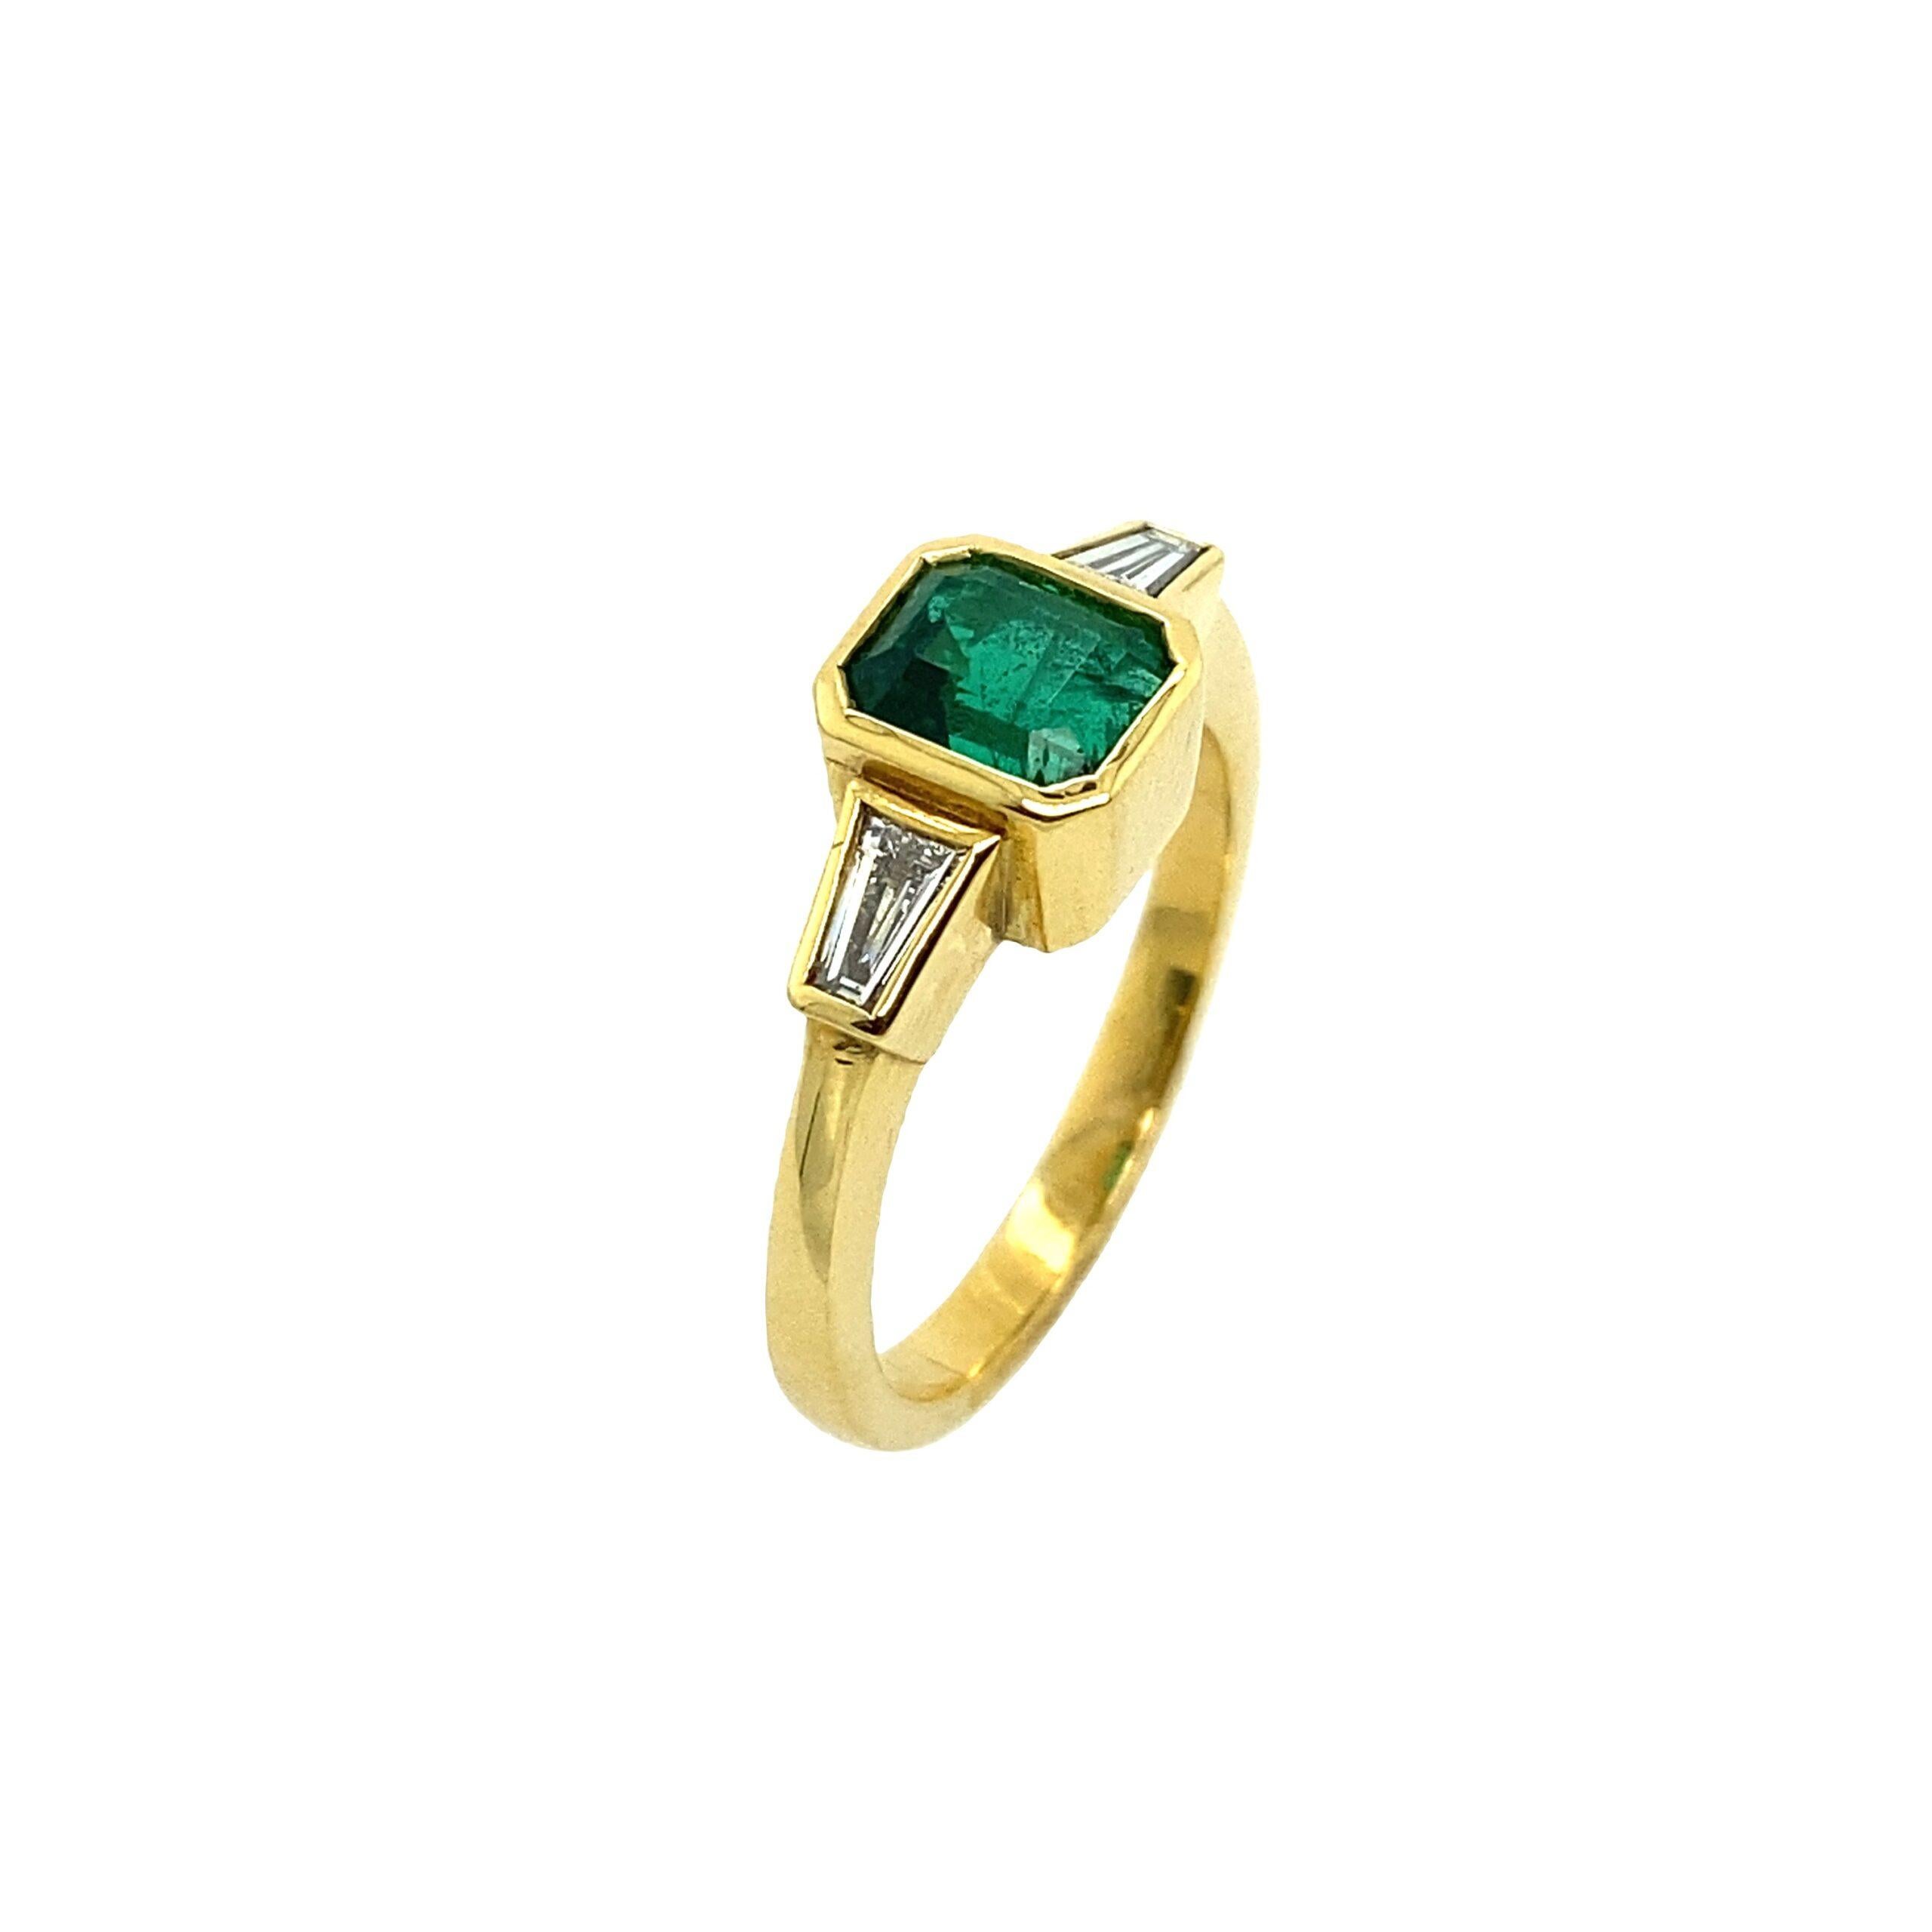 18ct Gold Feine Qualität 1,04ct Smaragd Schliff Smaragd Ring konisch Baguettes

Zusätzliche Informationen:
Gesamtgewicht der Diamanten: 0,33ct Farbe der Diamanten: F
Diamant Reinheit: VS
Gesamtgewicht: 5,2 g
Ring Größe: M